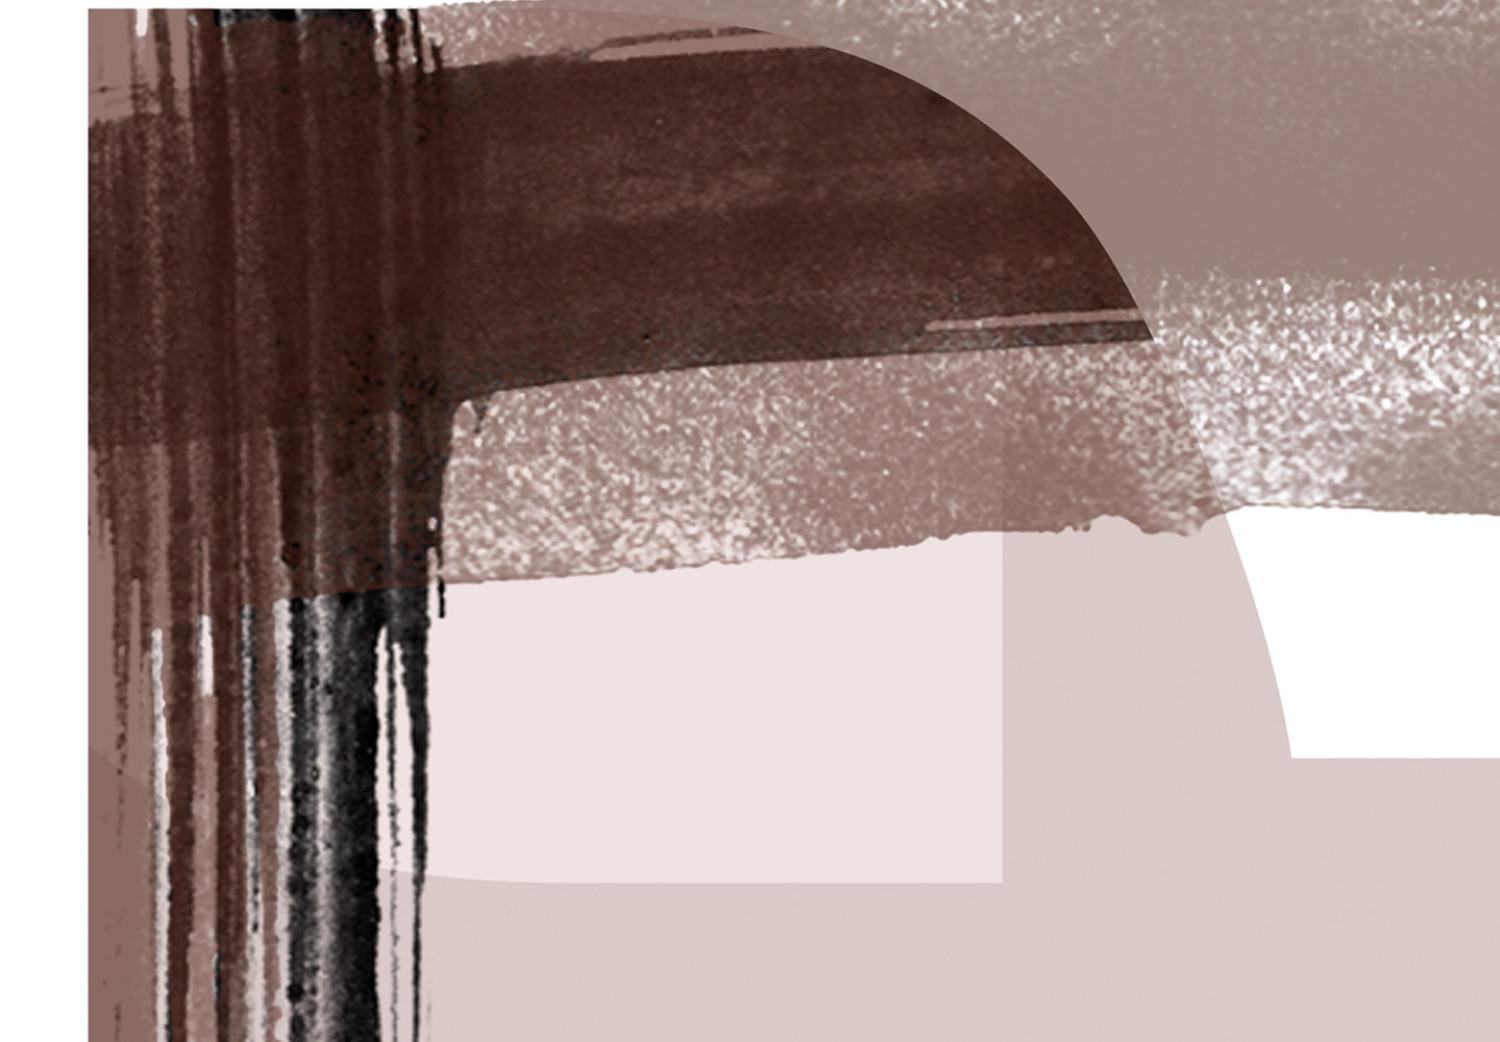 Cuadro moderno Letra mayúscula E blanca - abstracción beige con sombra negra